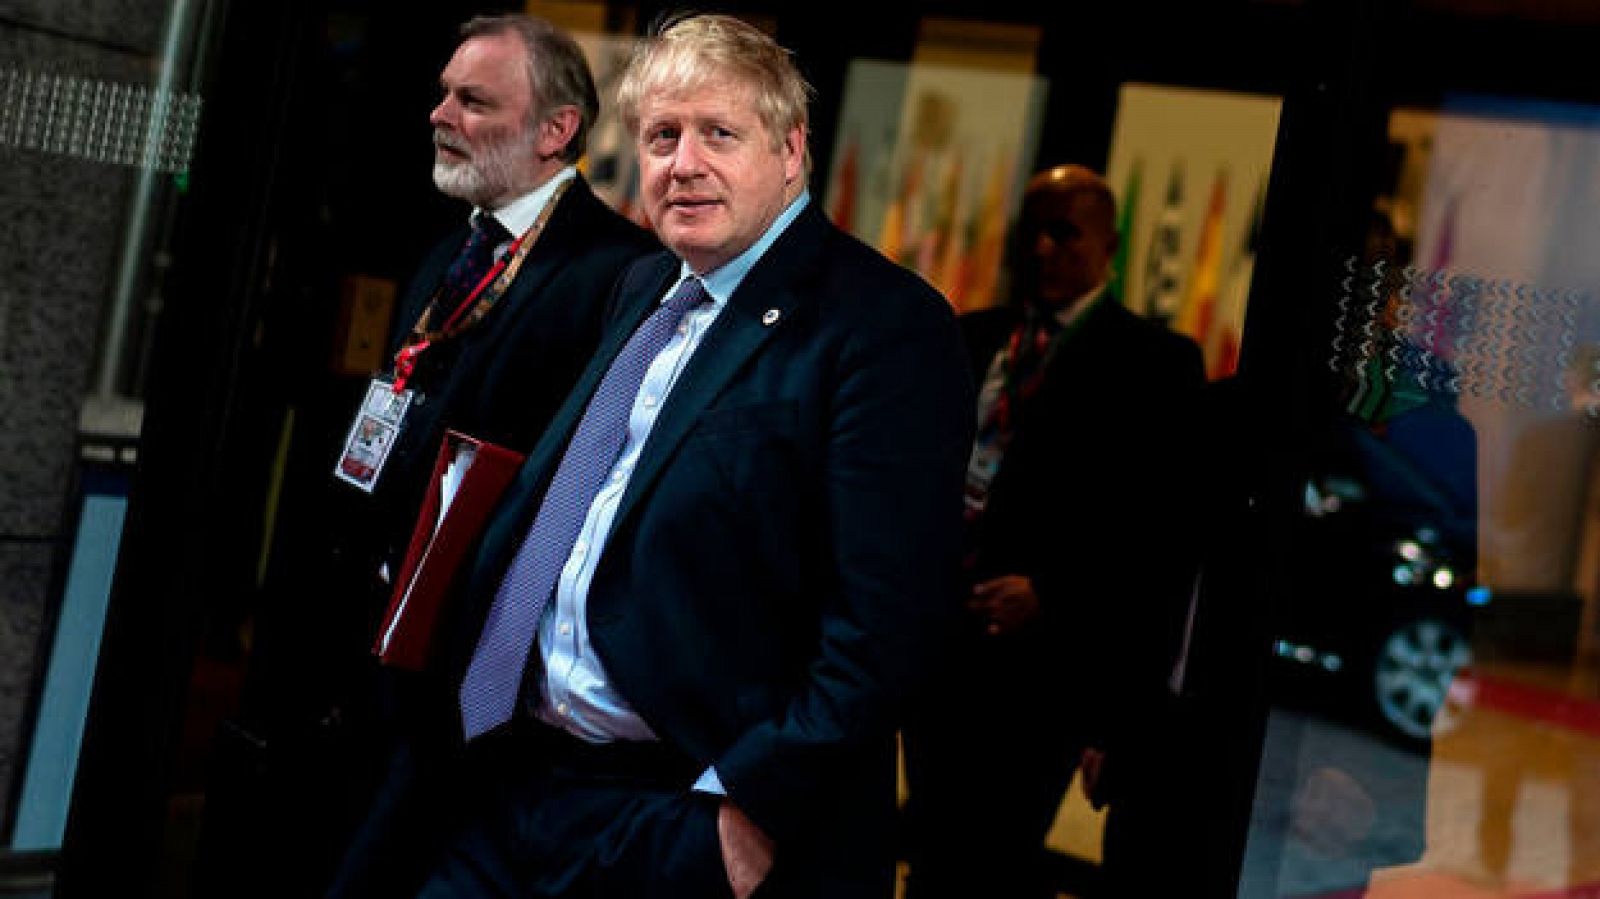 Johnson busca contra reloj apoyos al acuerdo con Bruselas horas antes de la votación en el Parlamento